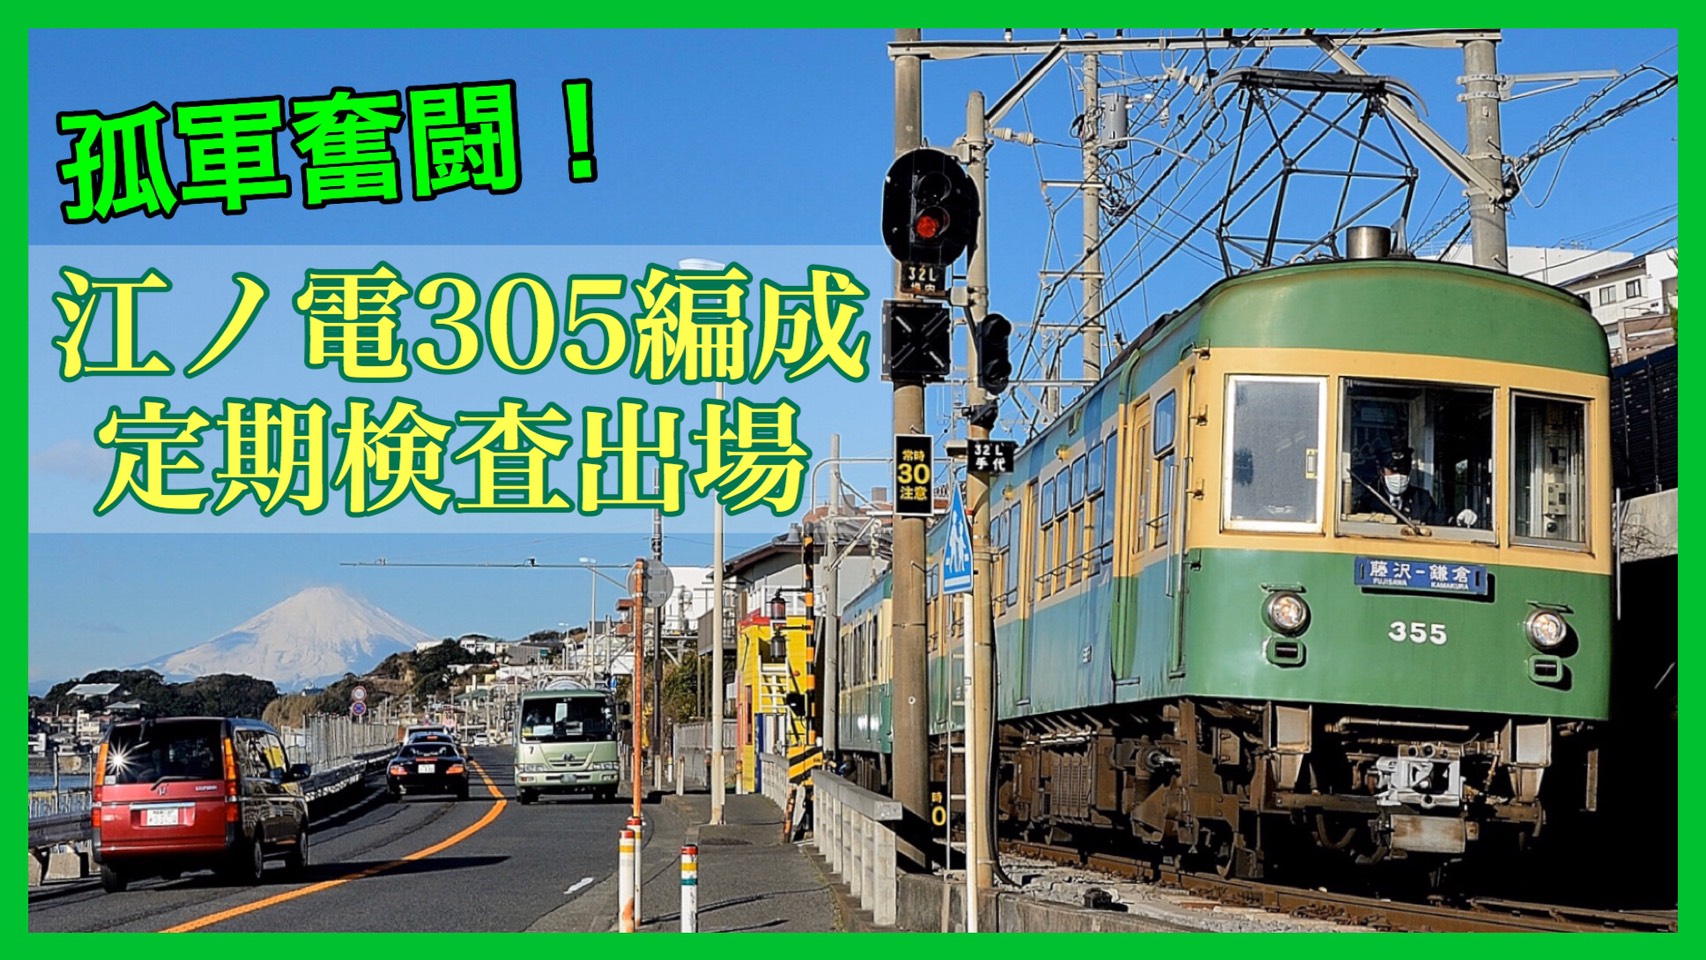 還暦 江ノ島電鉄300形最後の生き残り 江ノ電305編成が定期検査施工 鉄道ファンの待合室